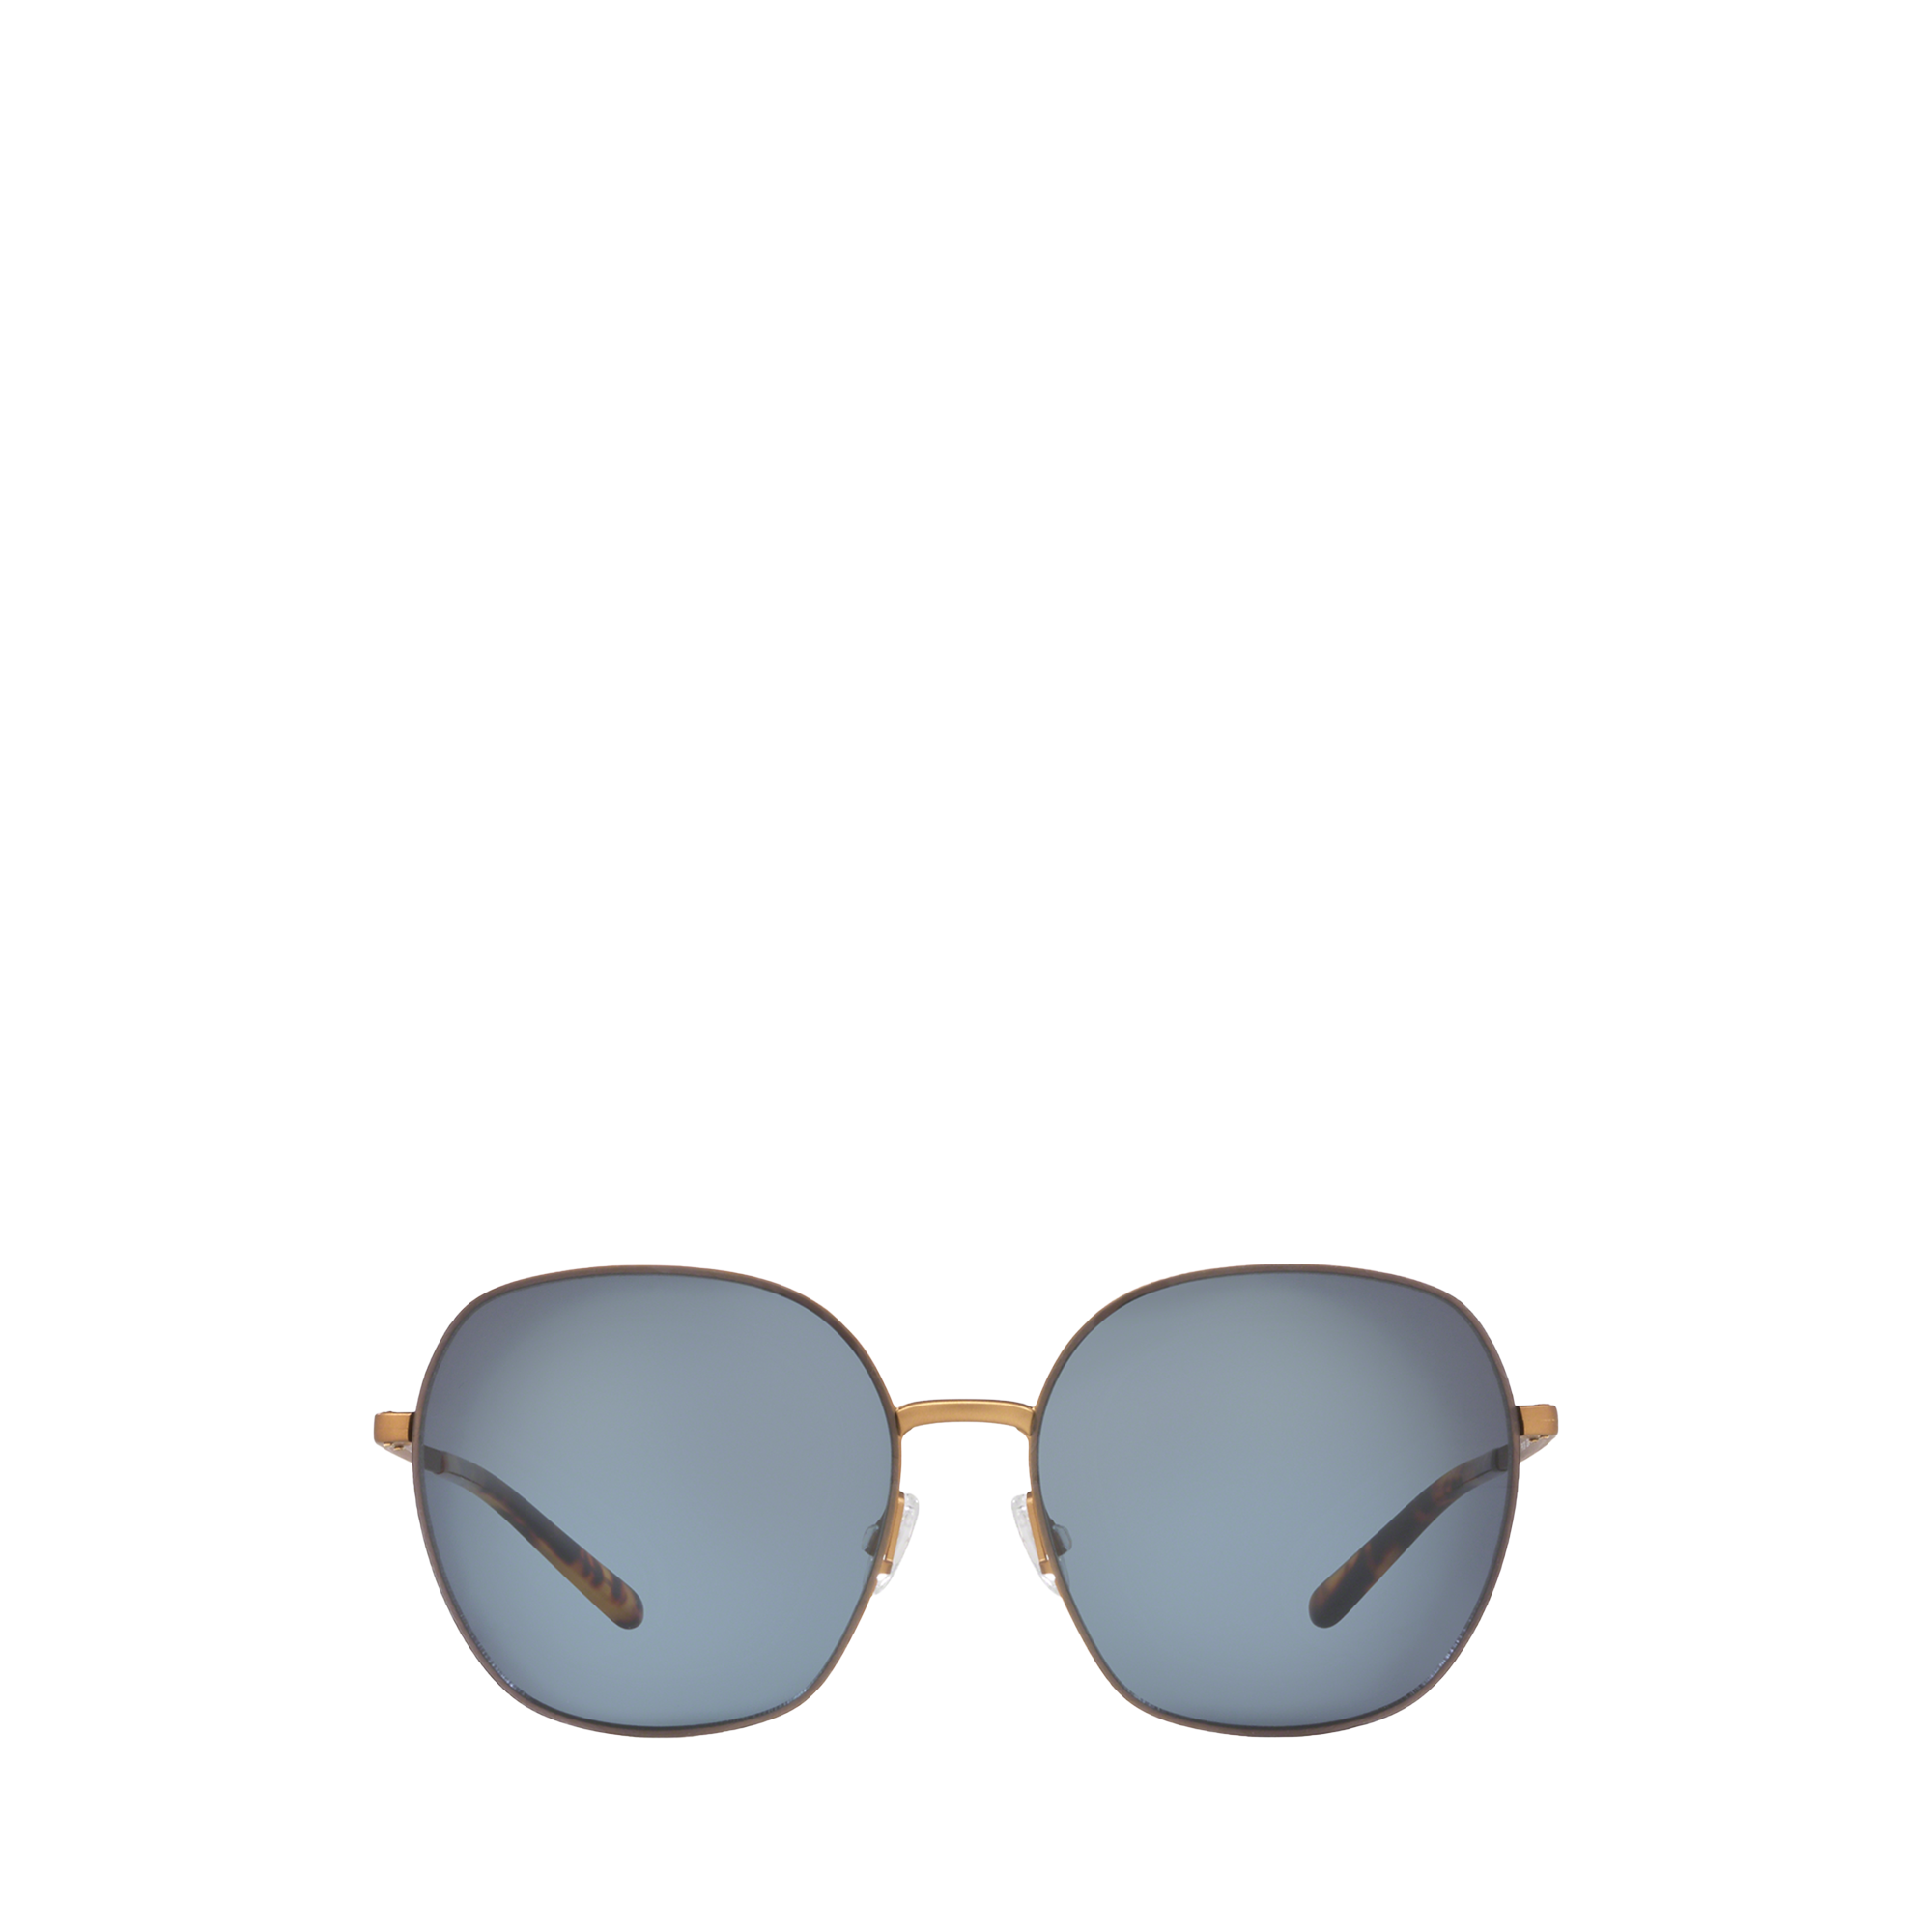 Ralph Lauren Bohemian Butterfly Sunglasses. 2